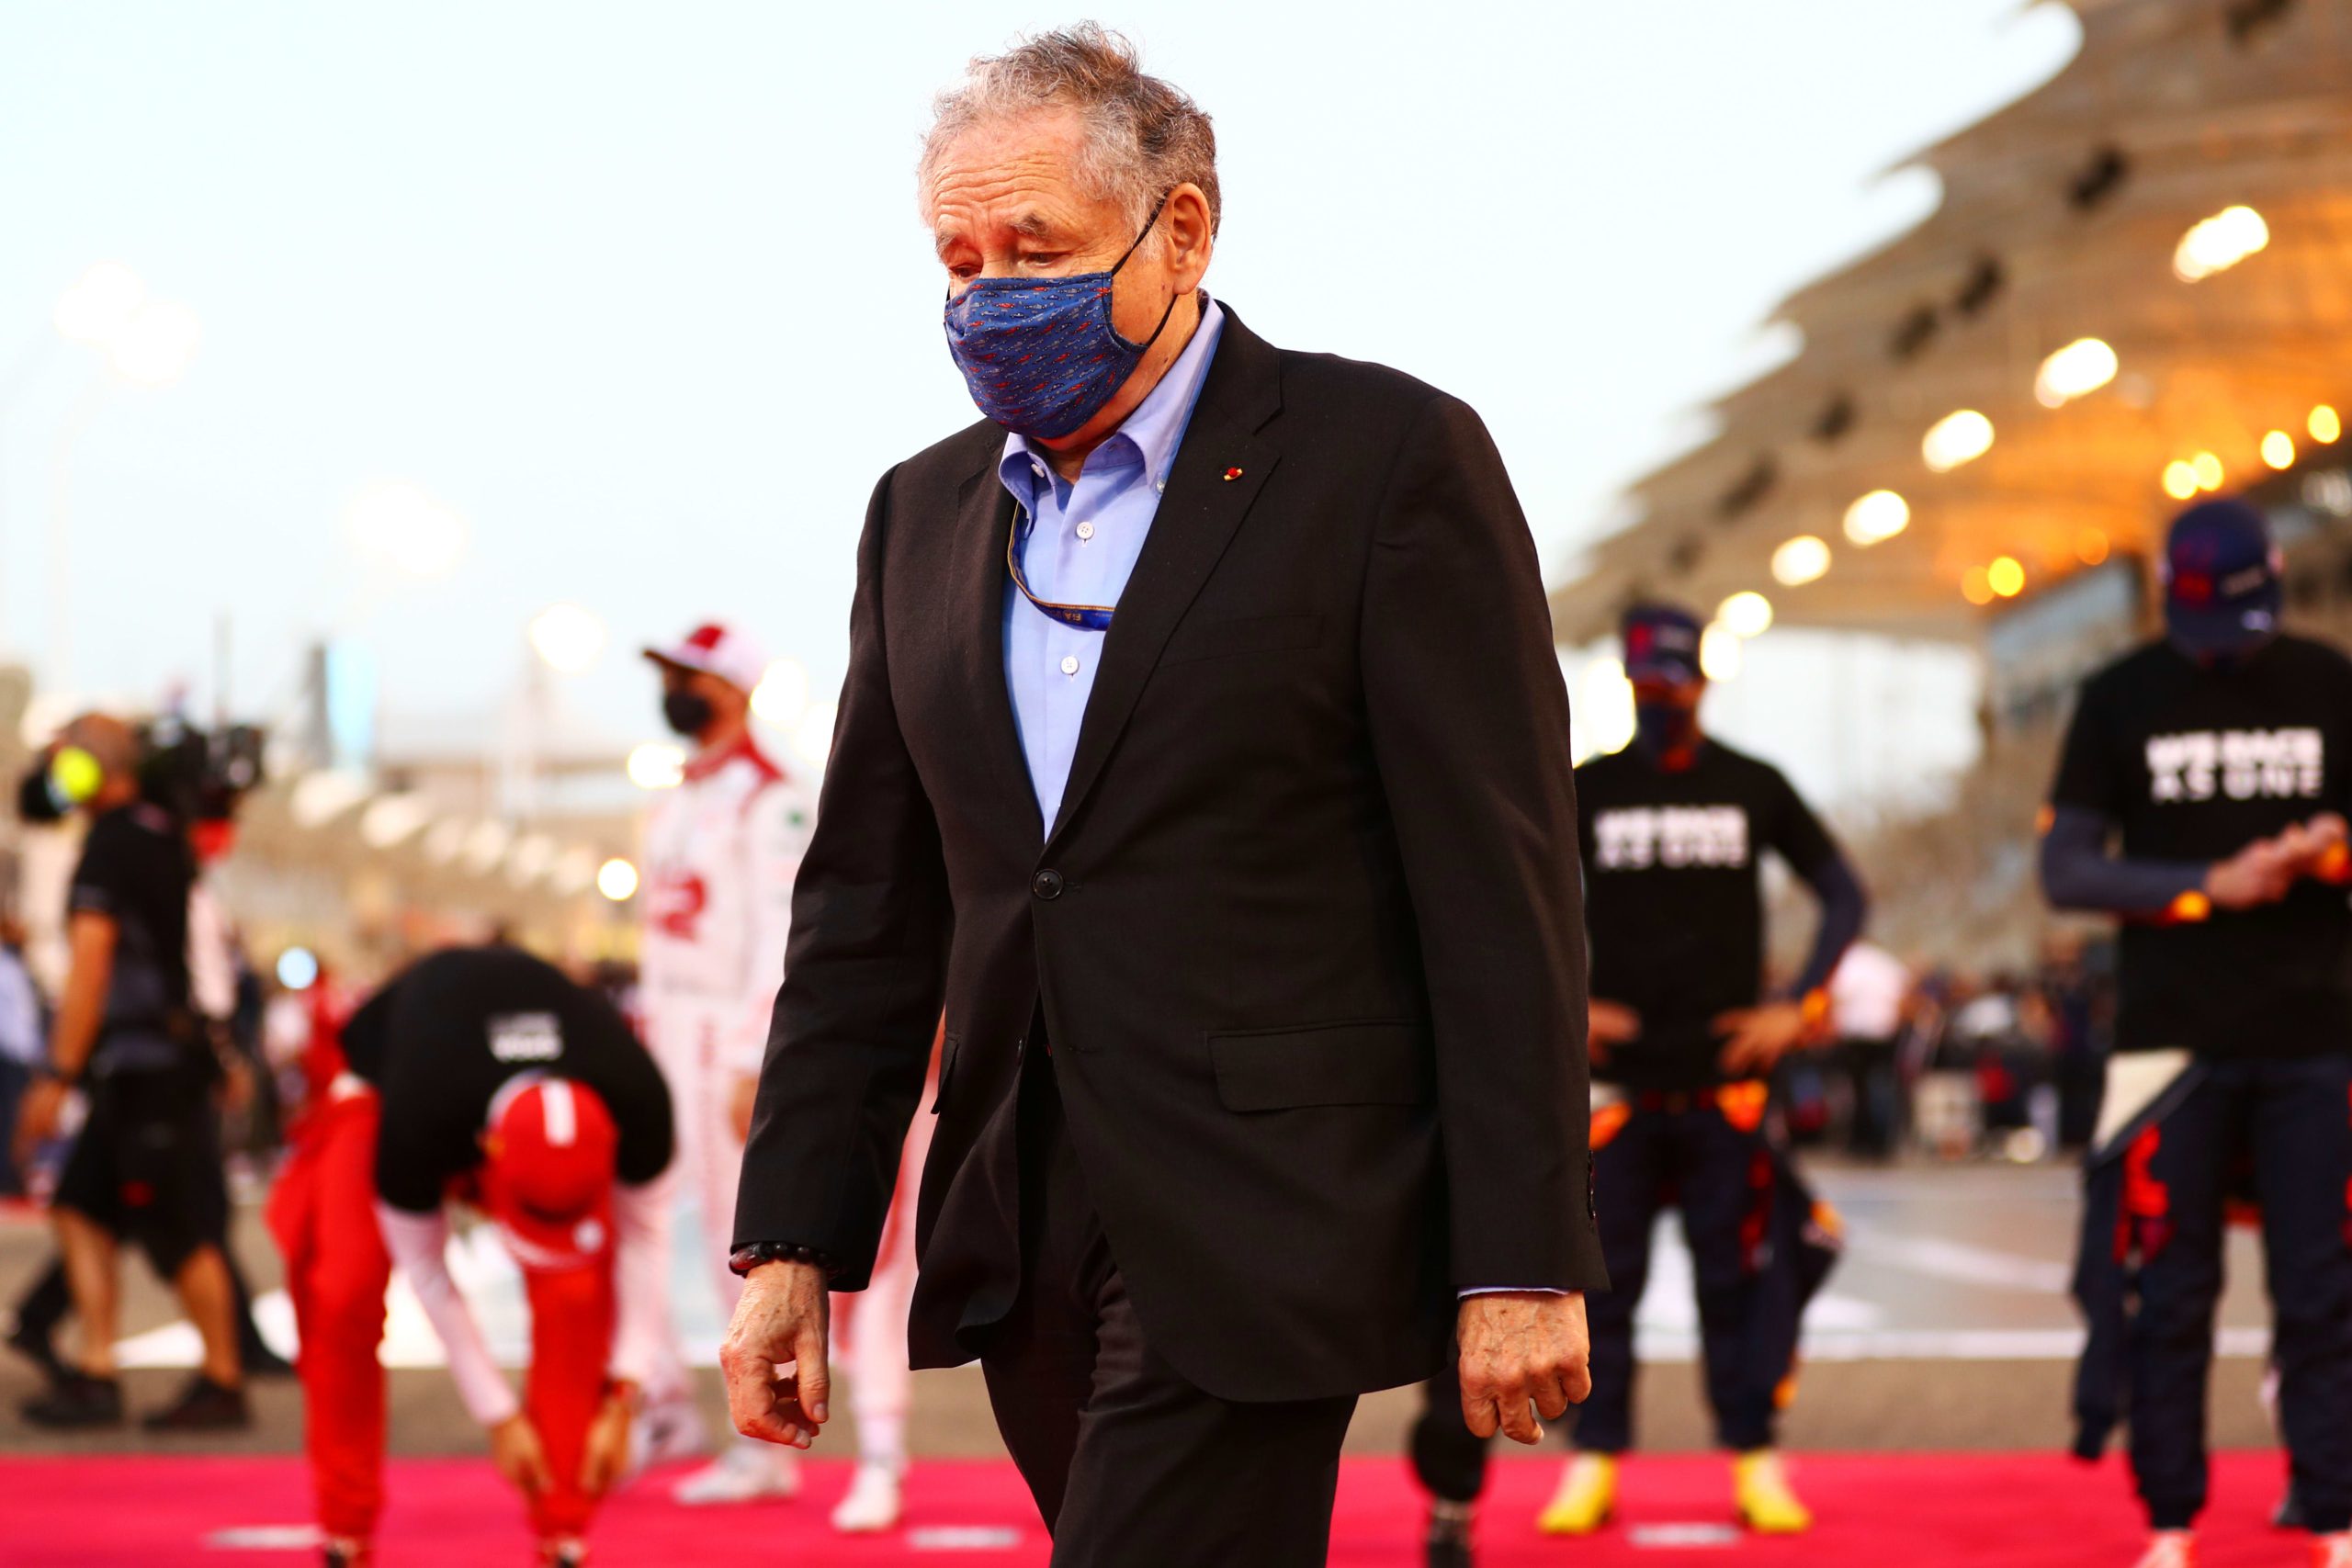 El jefe de carreras dice que la Fórmula Uno no debería involucrarse en política ya que el deporte se enfrenta a problemas antes del Gran Premio de Arabia Saudita